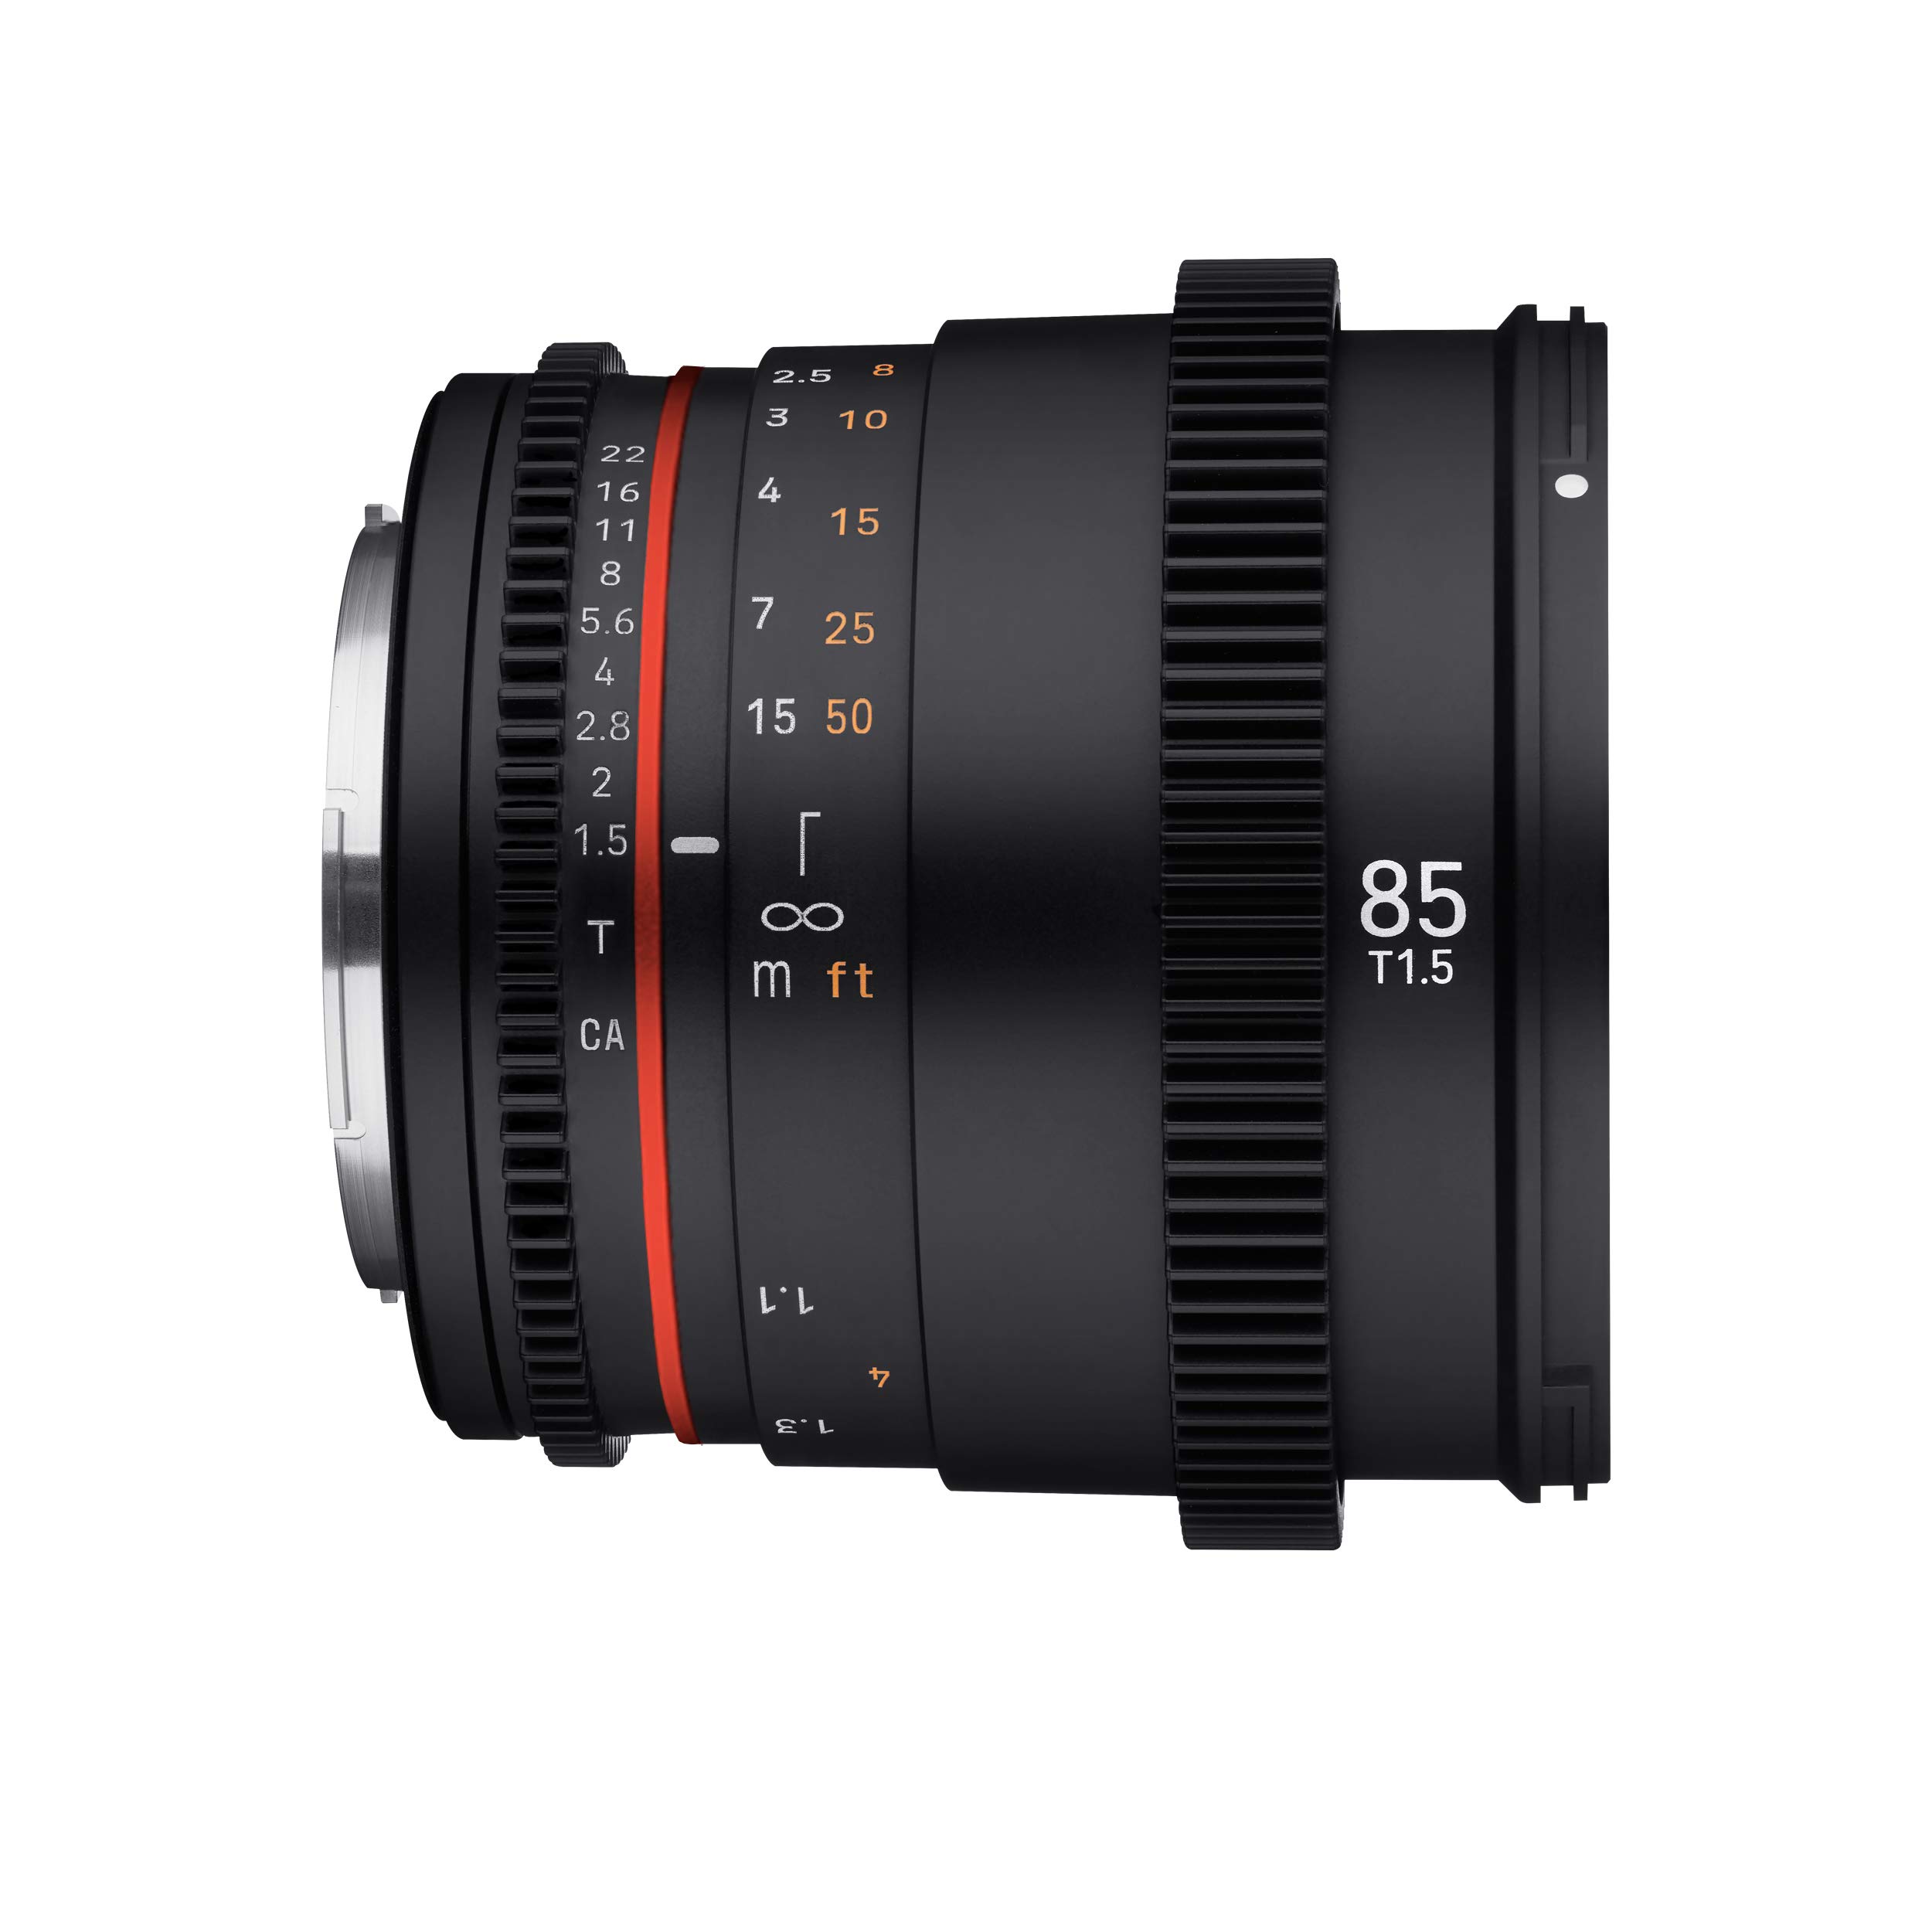 Rokinon 85mm T1.5 High Speed Full Frame Cine DSX Lens for Canon EF